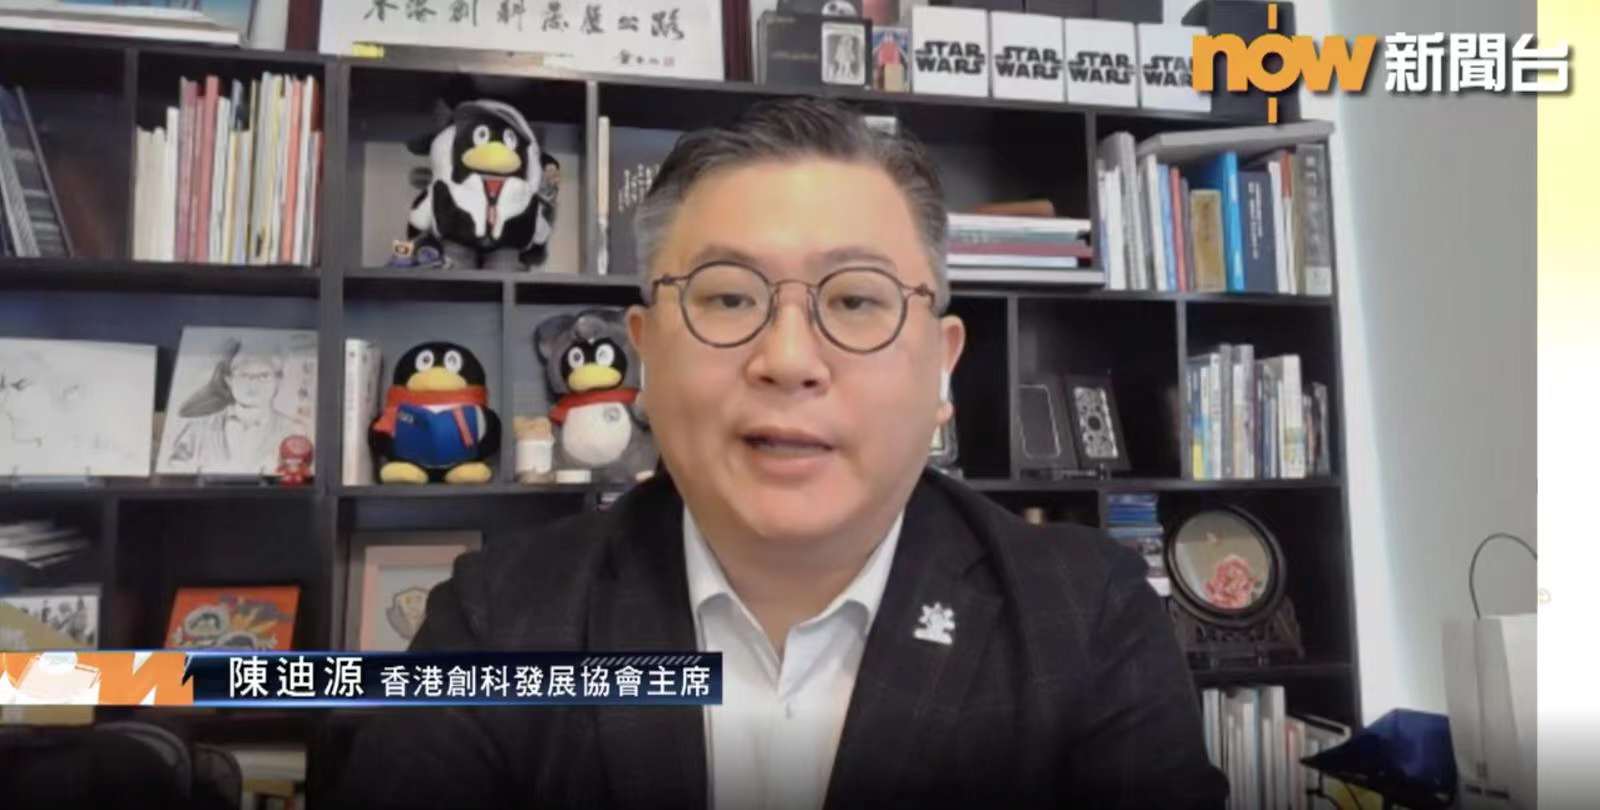 香港創科發展協會主席陳迪源擔任Now TV直播節目《時事全方位》嘉賓